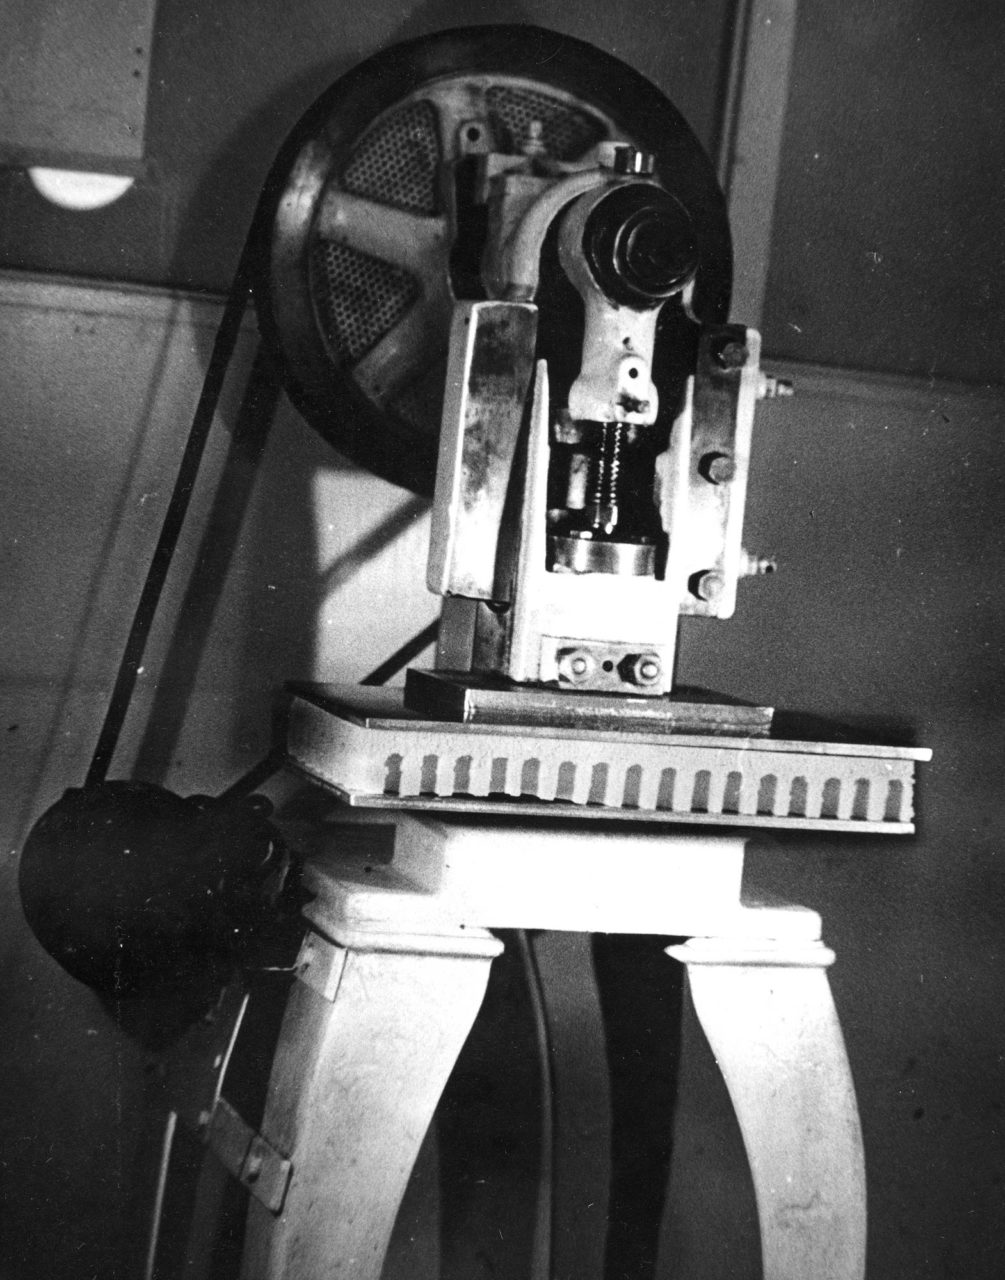 Schwarz-Weiß-Foto einer großen Maschine, die wie eine Standbohrmaschine aussieht.